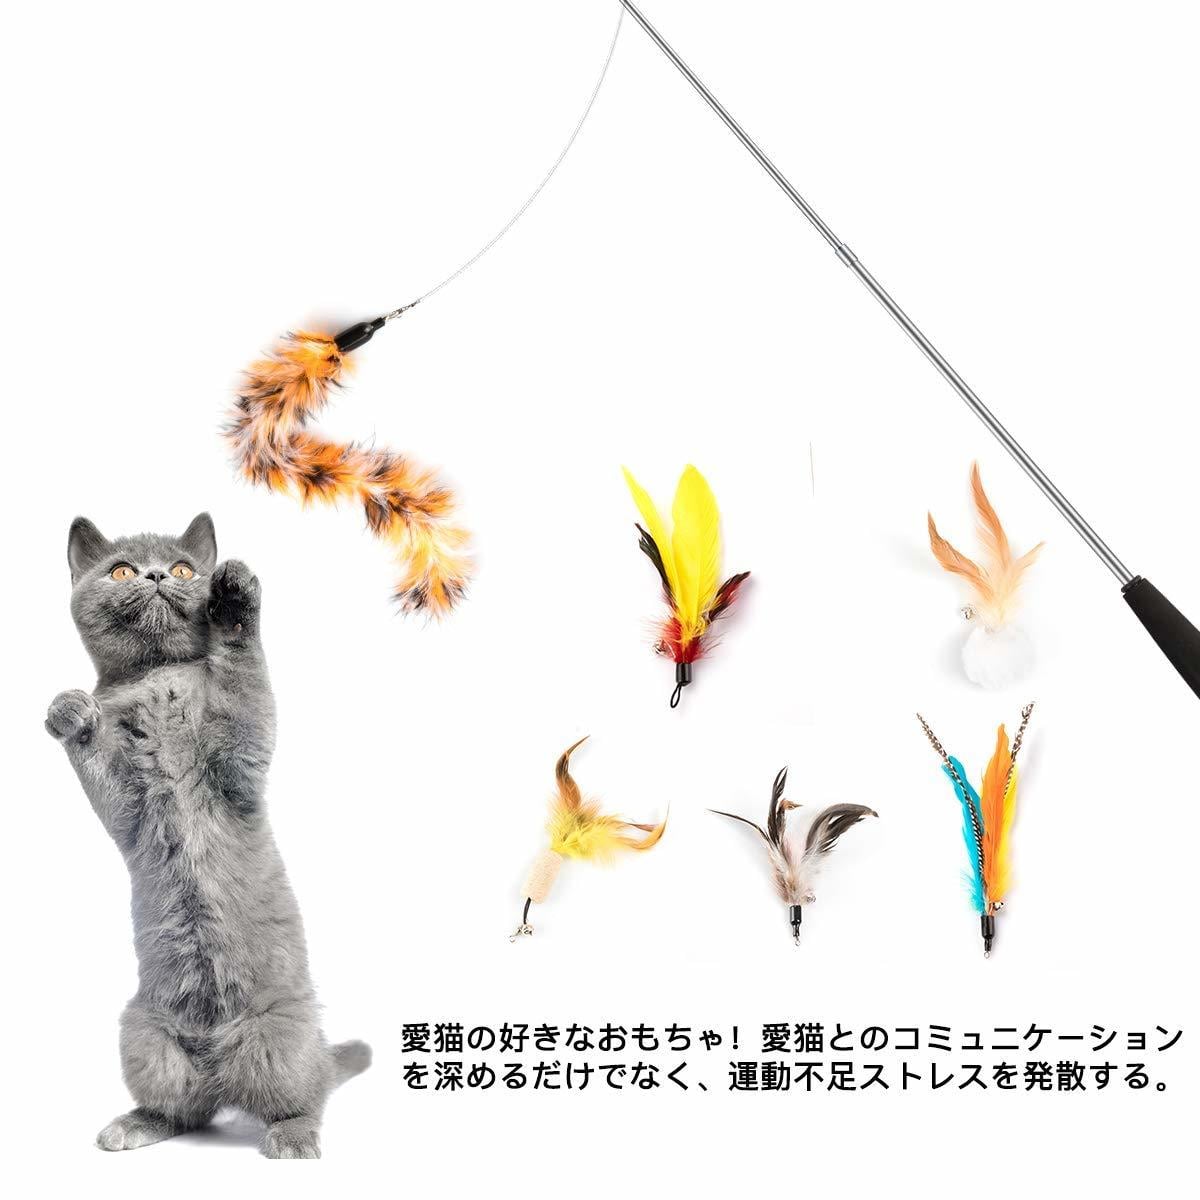 新年の贈り物 猫じゃらし 鈴 羽根 猫用品 おもちゃ 猫まっしぐら ワイヤー ペット用